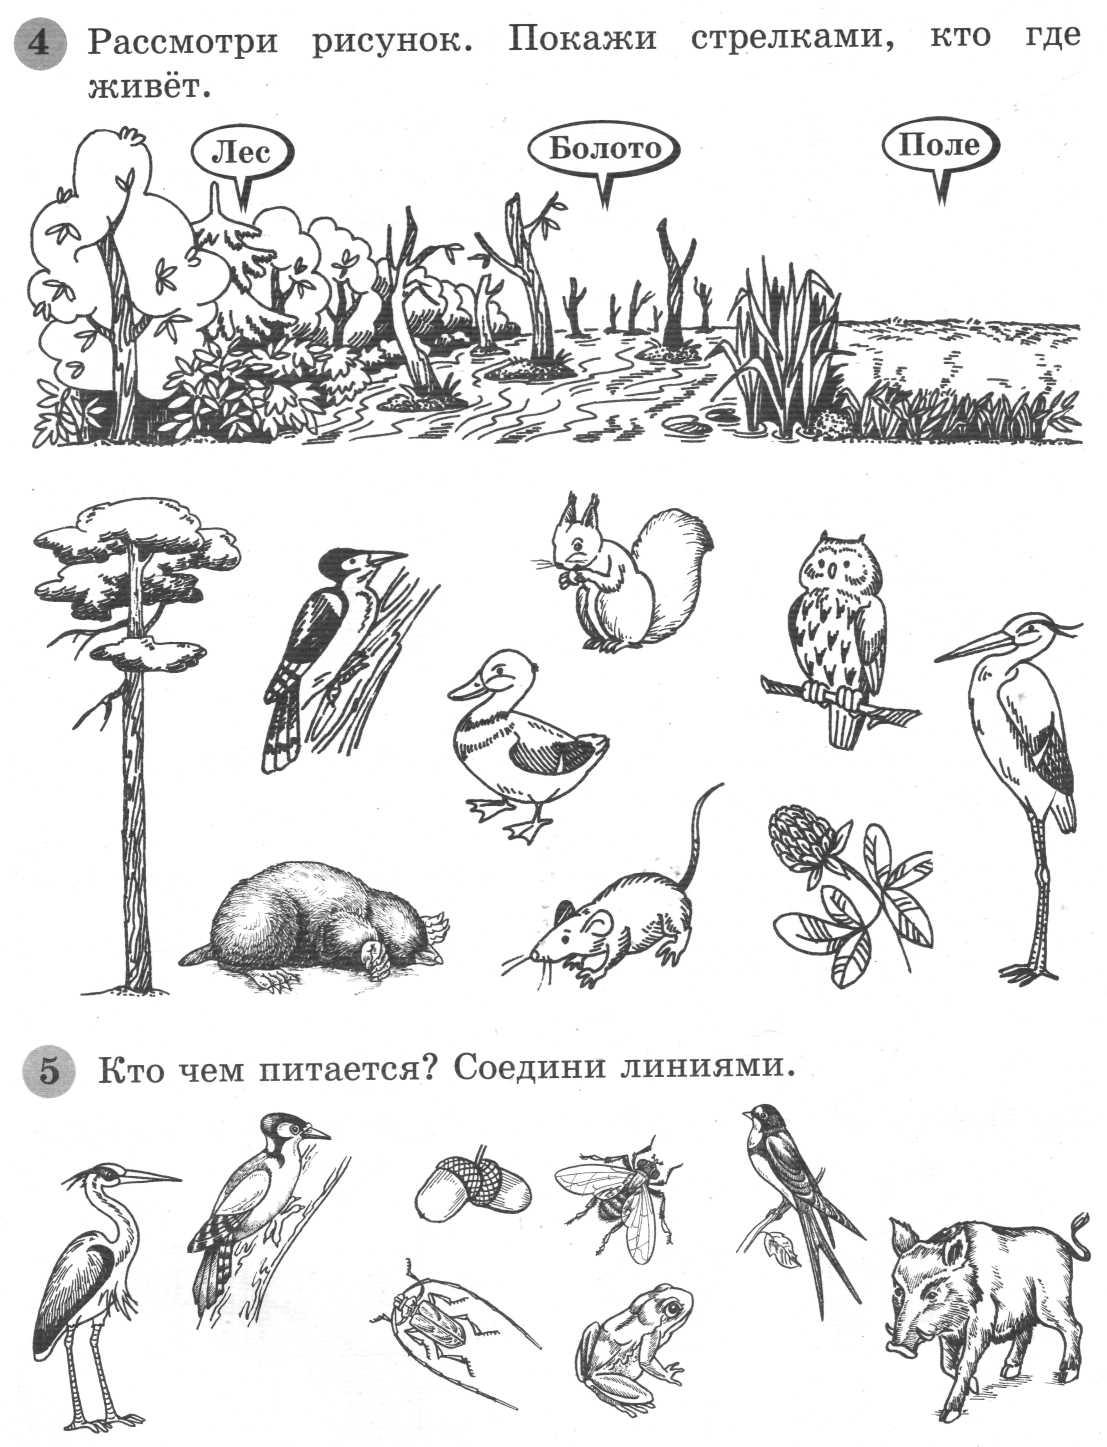 Назови животных изображенных на рисунке